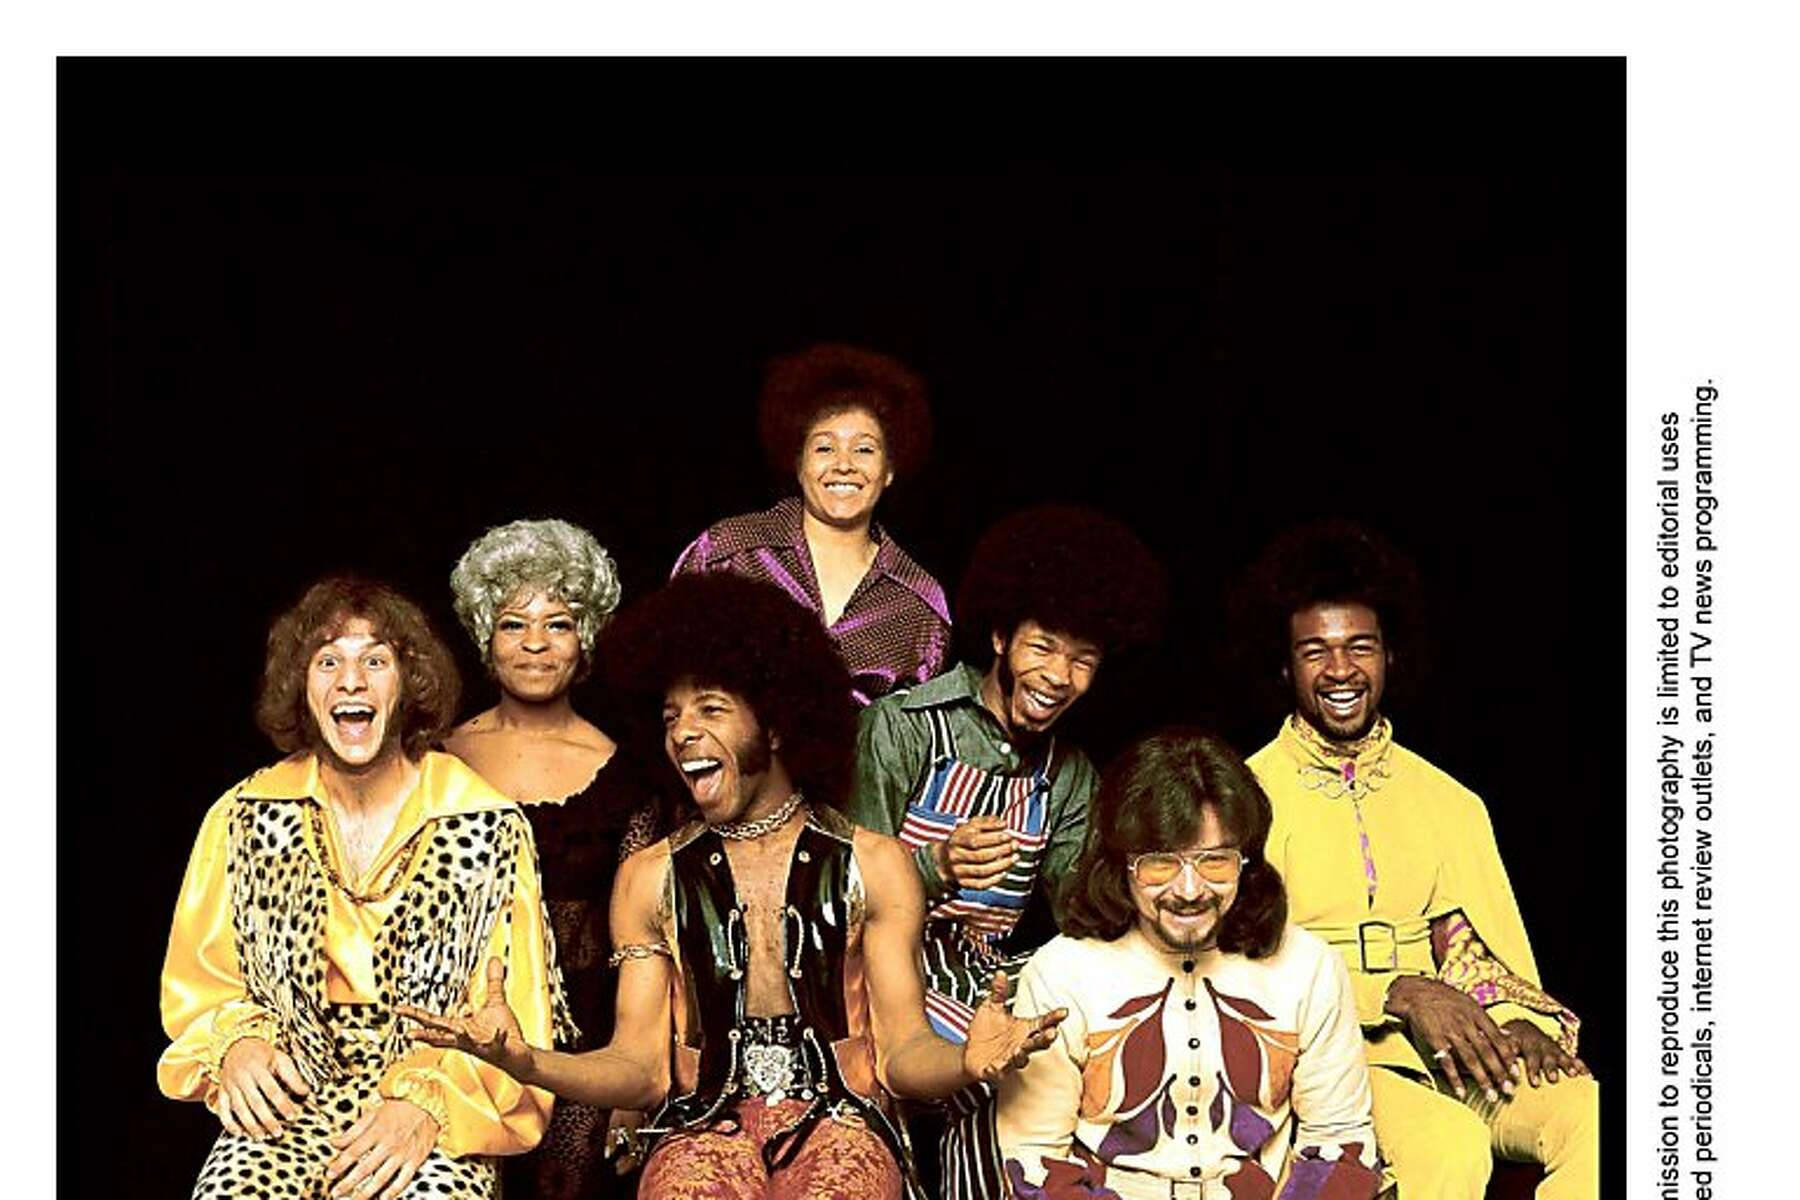 Slyand The Family Stone Membri Si Scattano Una Foto Sfondo